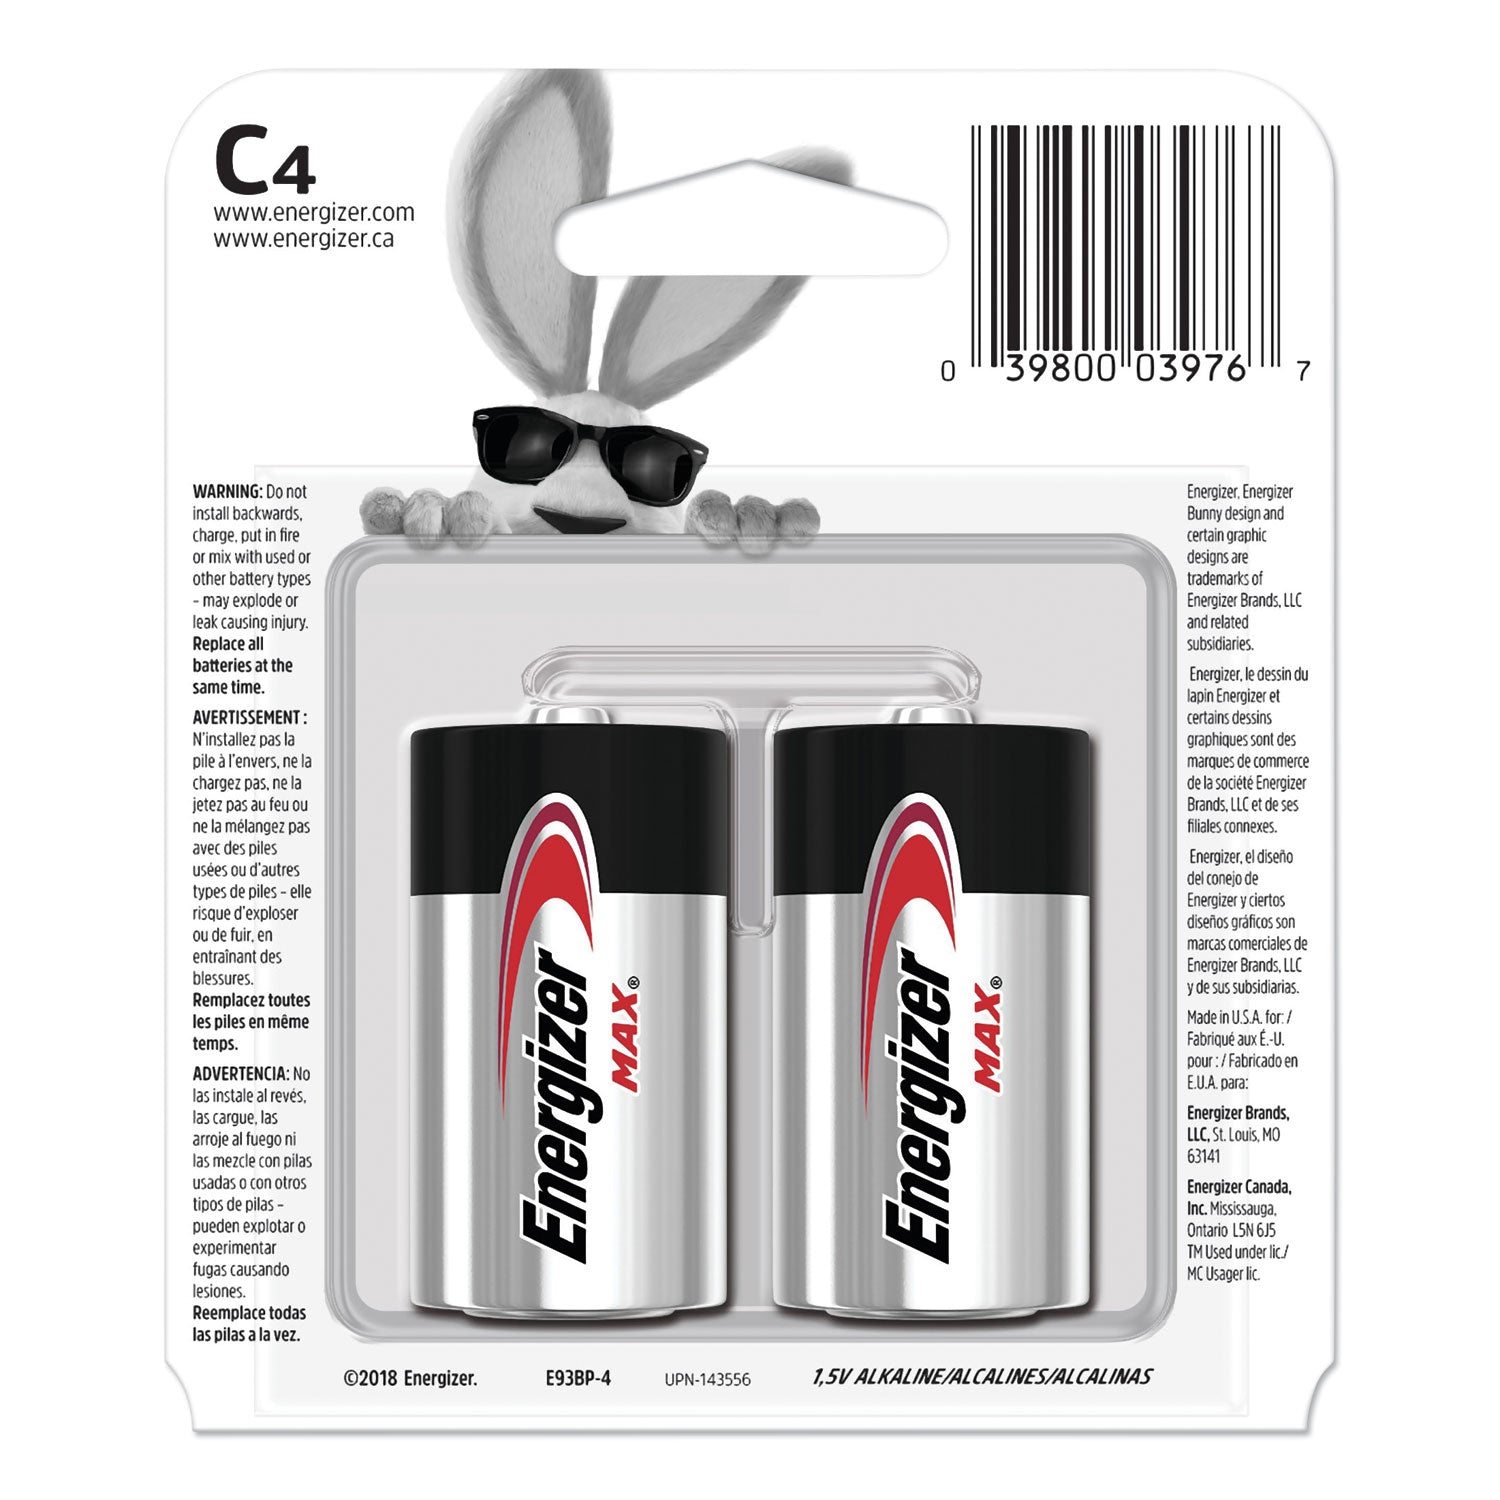 MAX Alkaline C Batteries, 1.5 V, 4/Pack - 